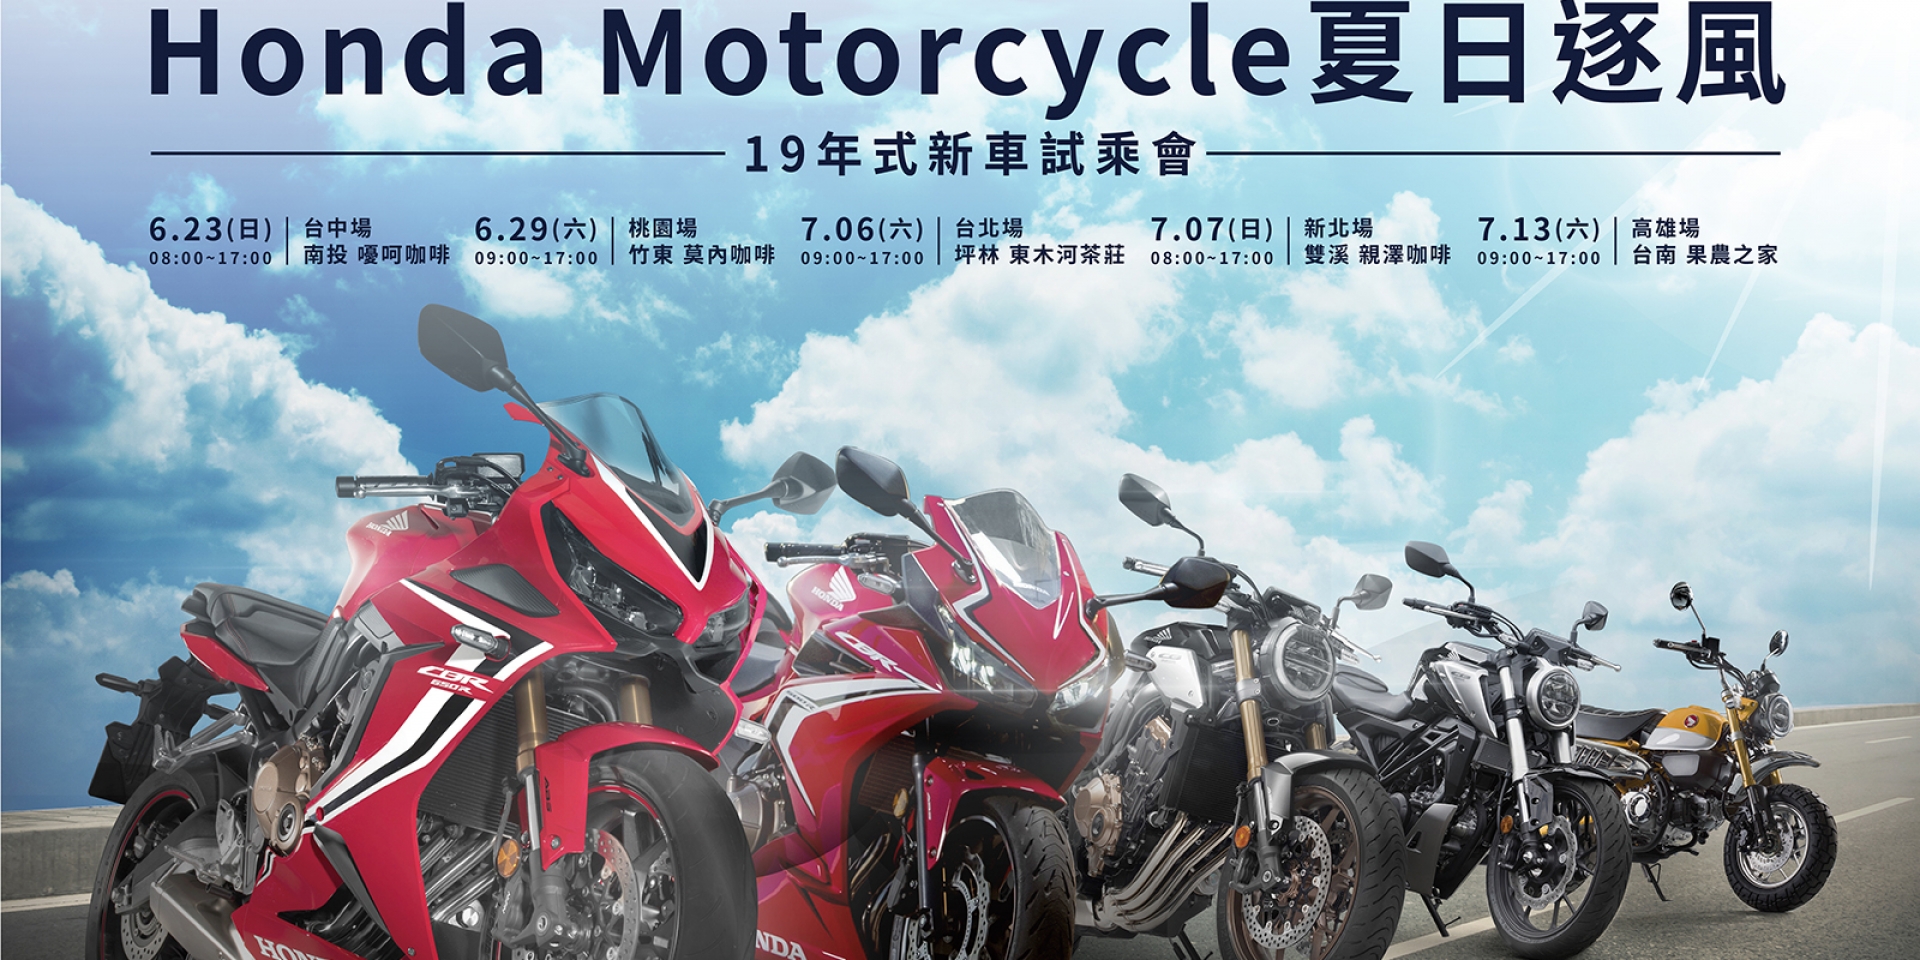 官方新聞稿。Honda Motorcycle夏日逐風新車試乘會  2019年式全新車款等您來體驗